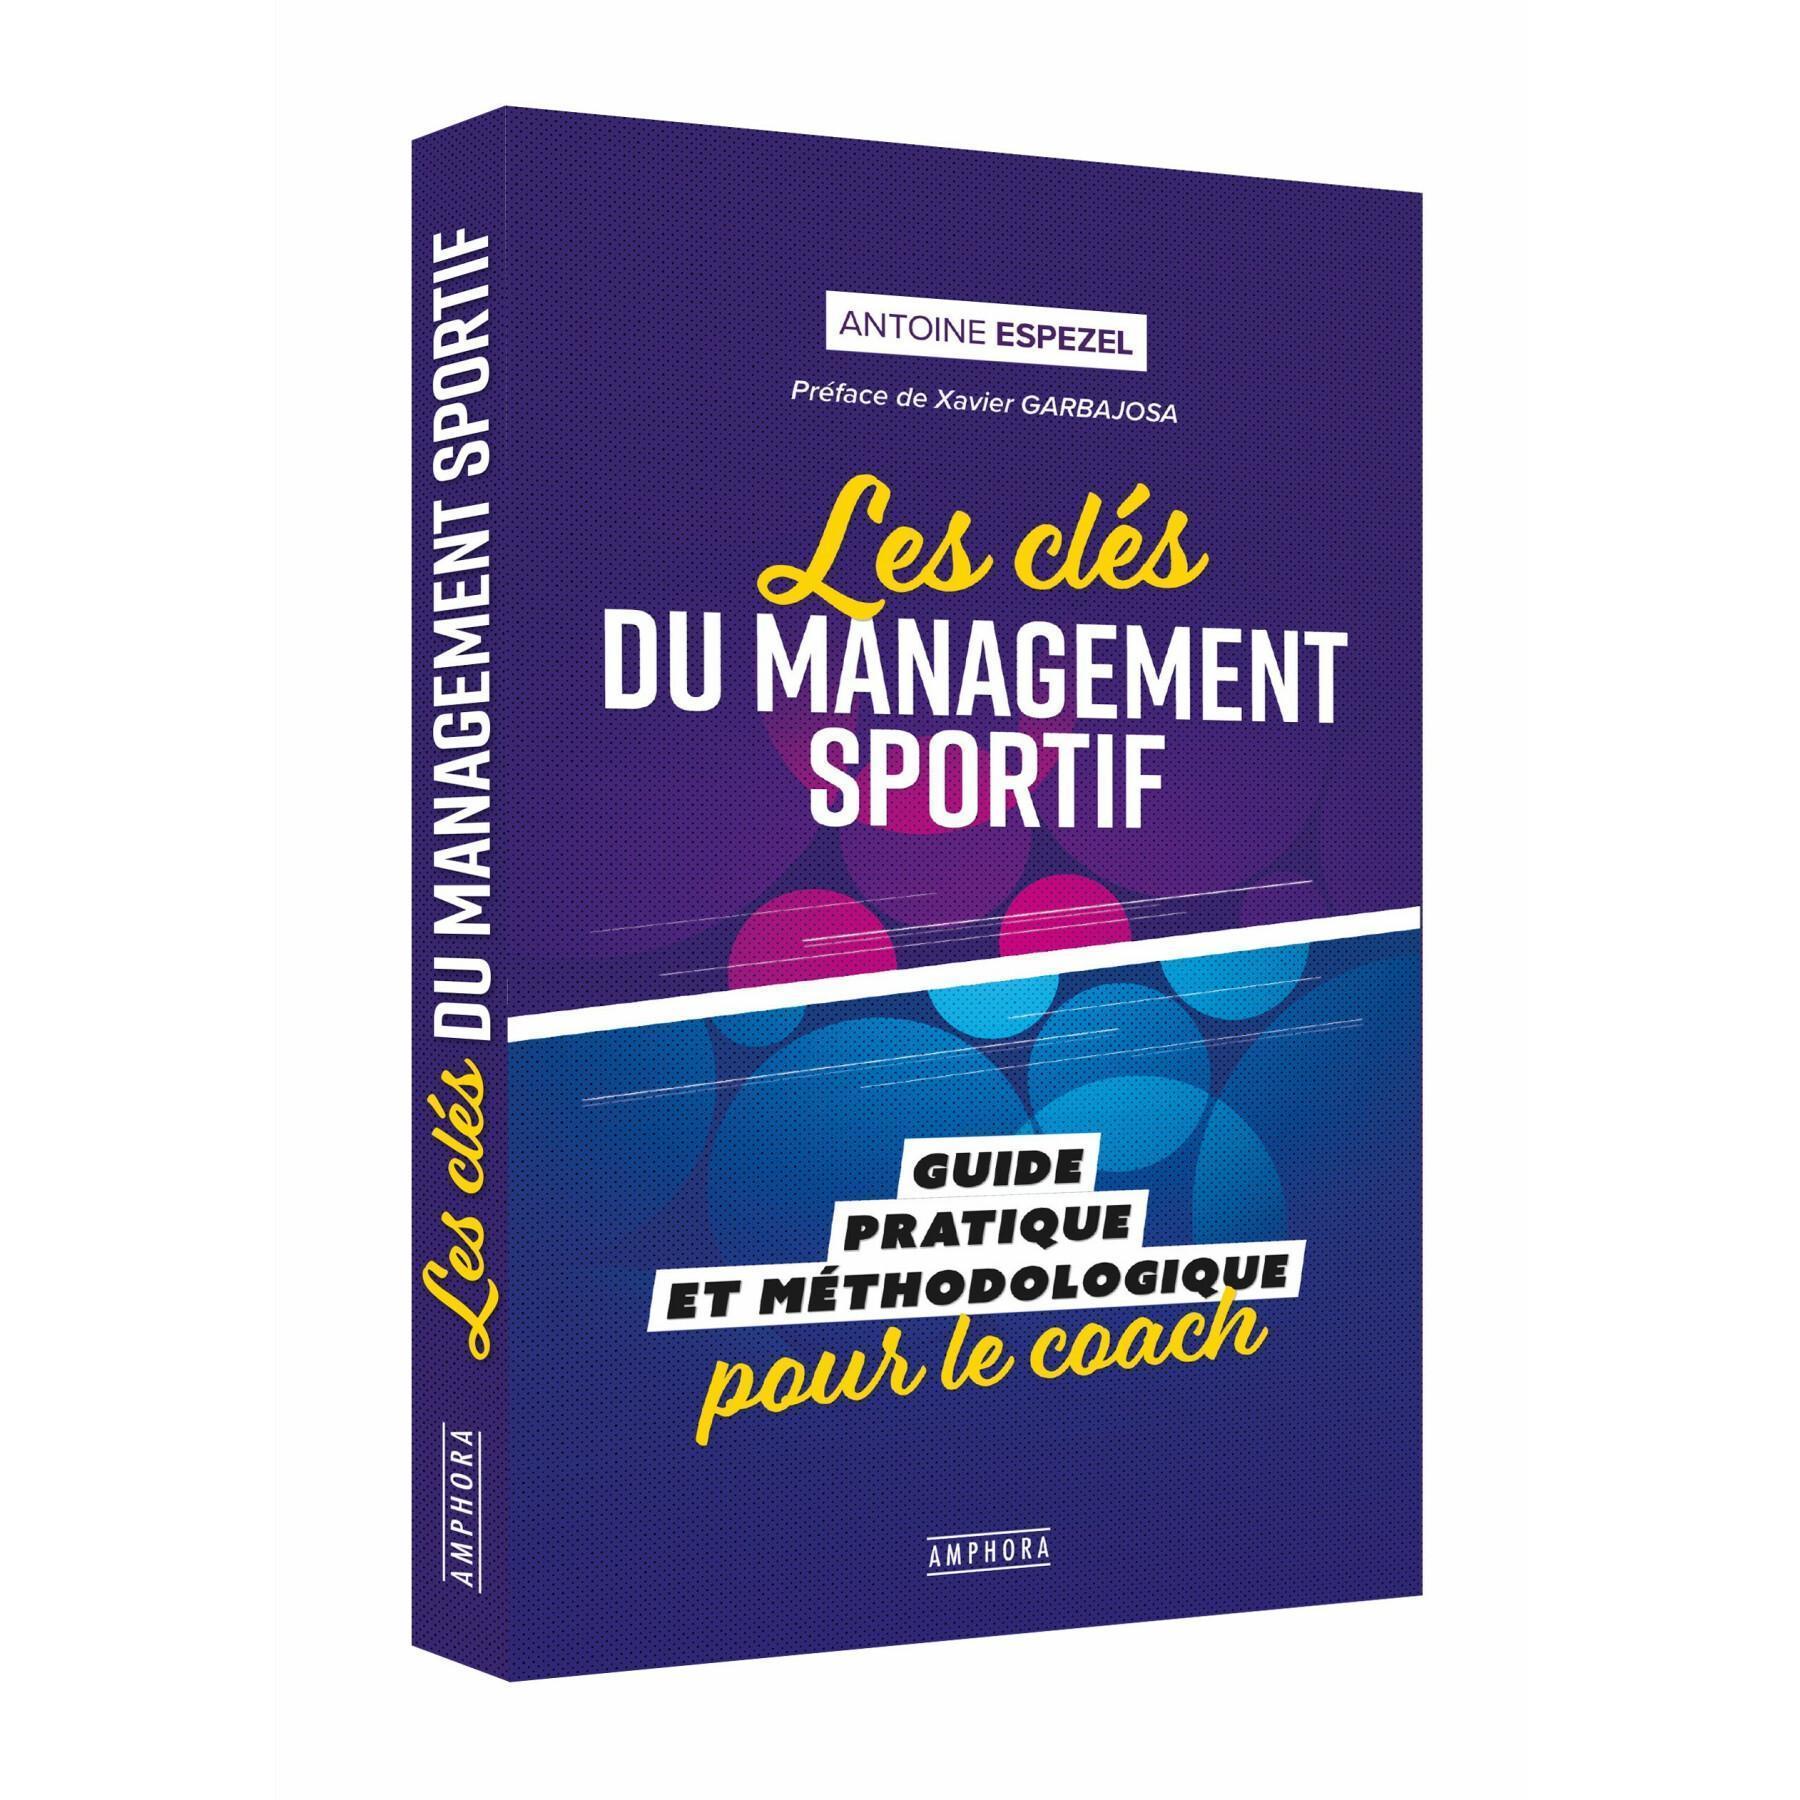 Libro les clés du management sportif (publicación febrero 2020) Amphora